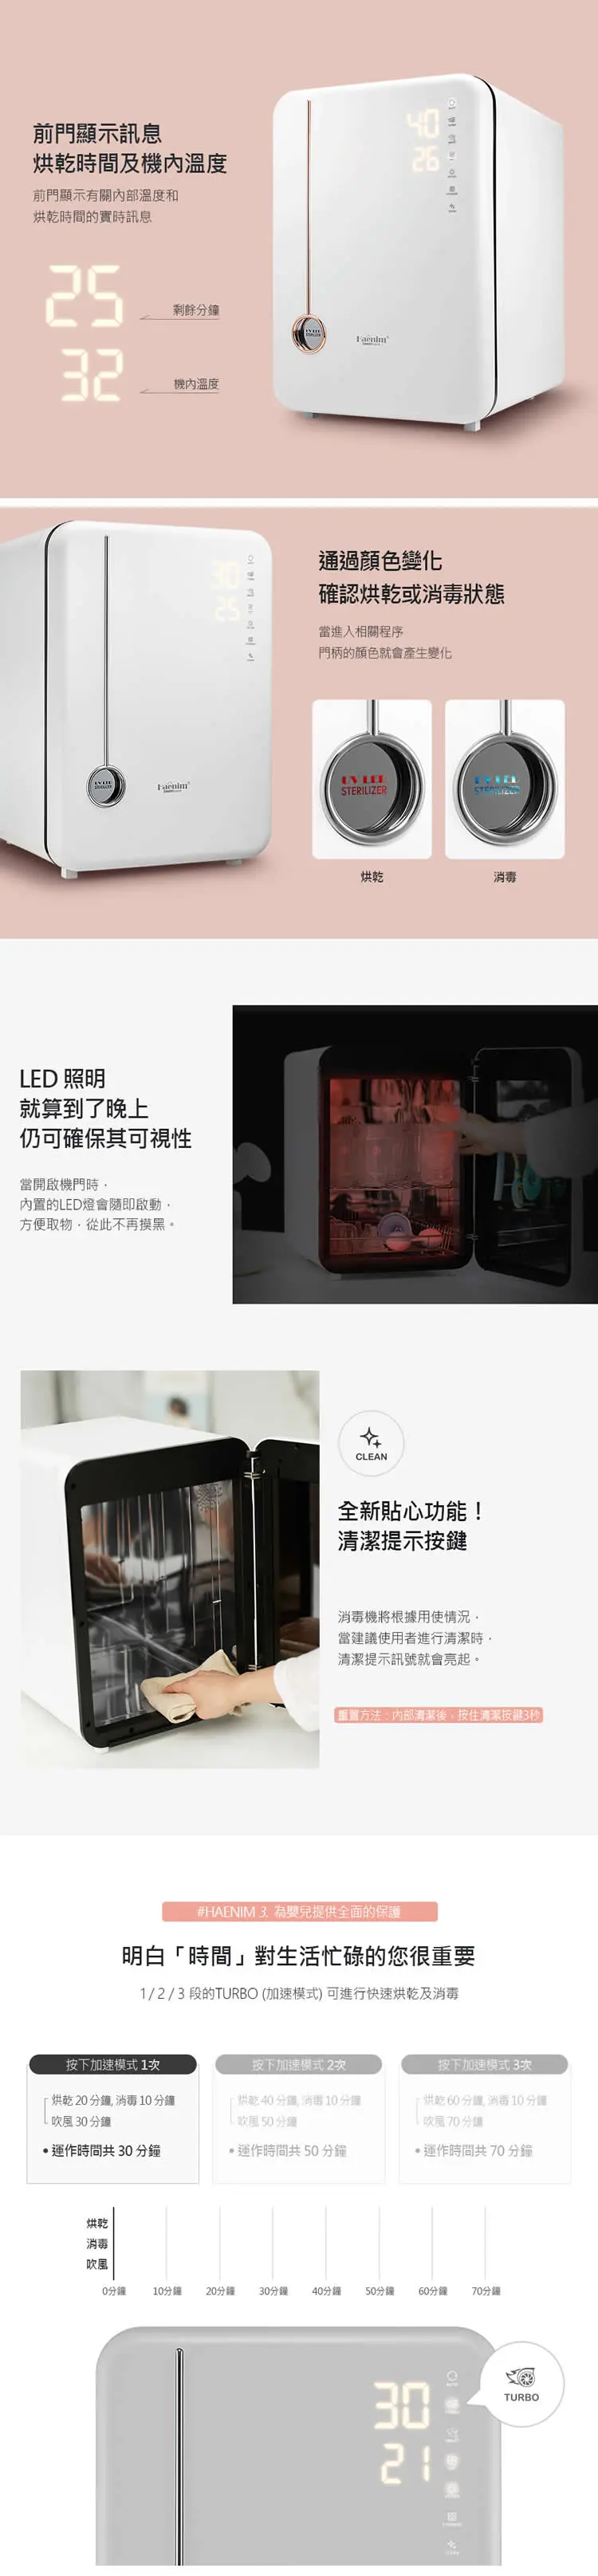 Haenim喜临 第4代UV LED消毒烘乾机(典雅系列)